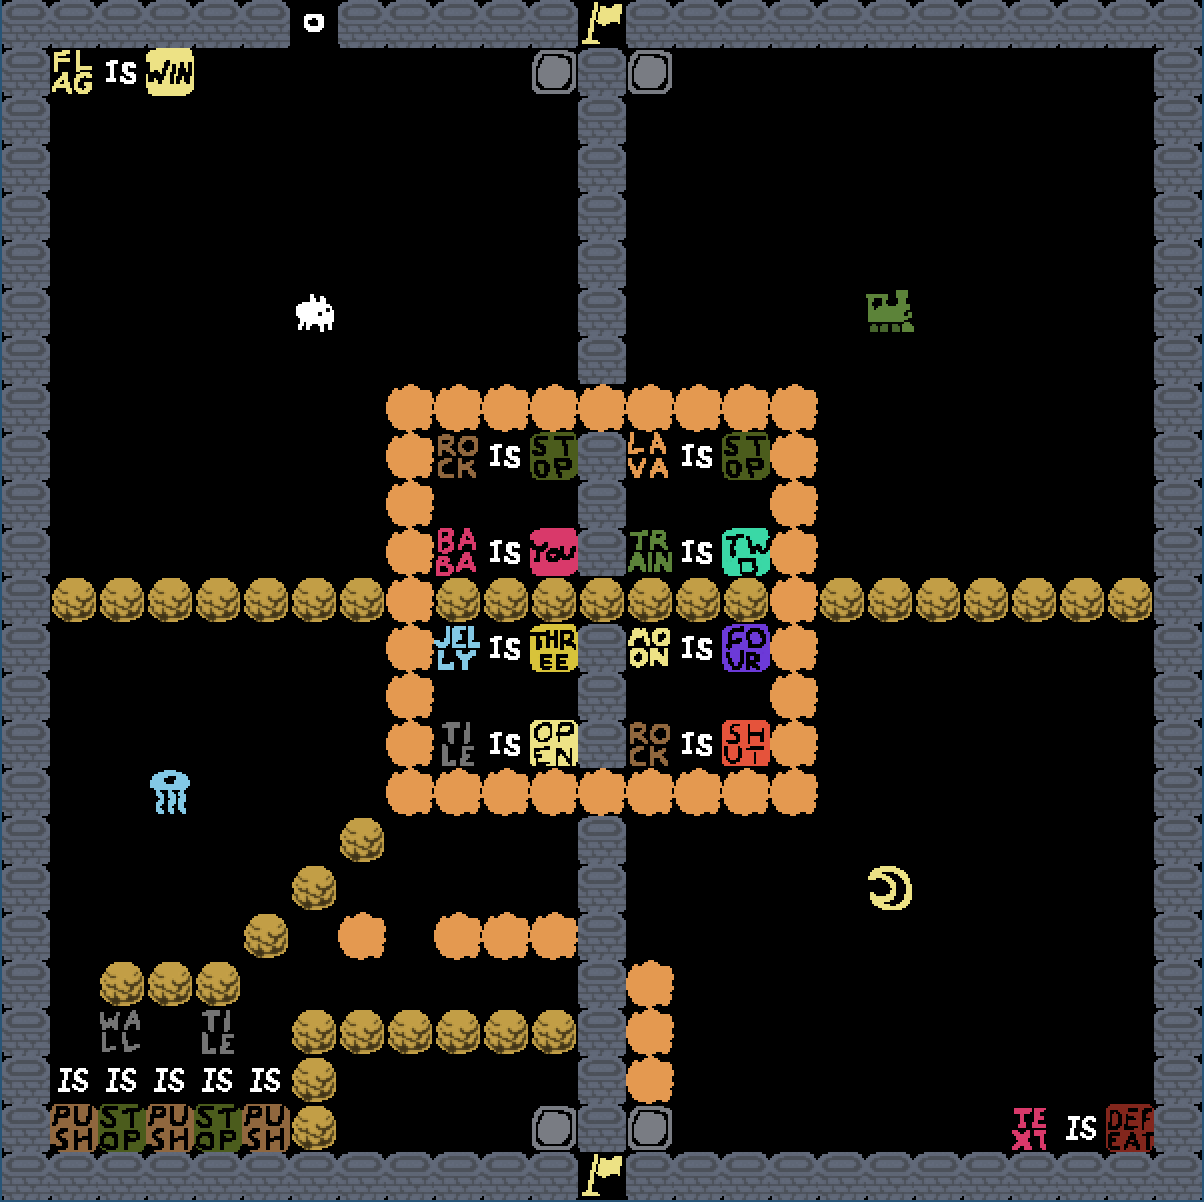 Level 6 layout